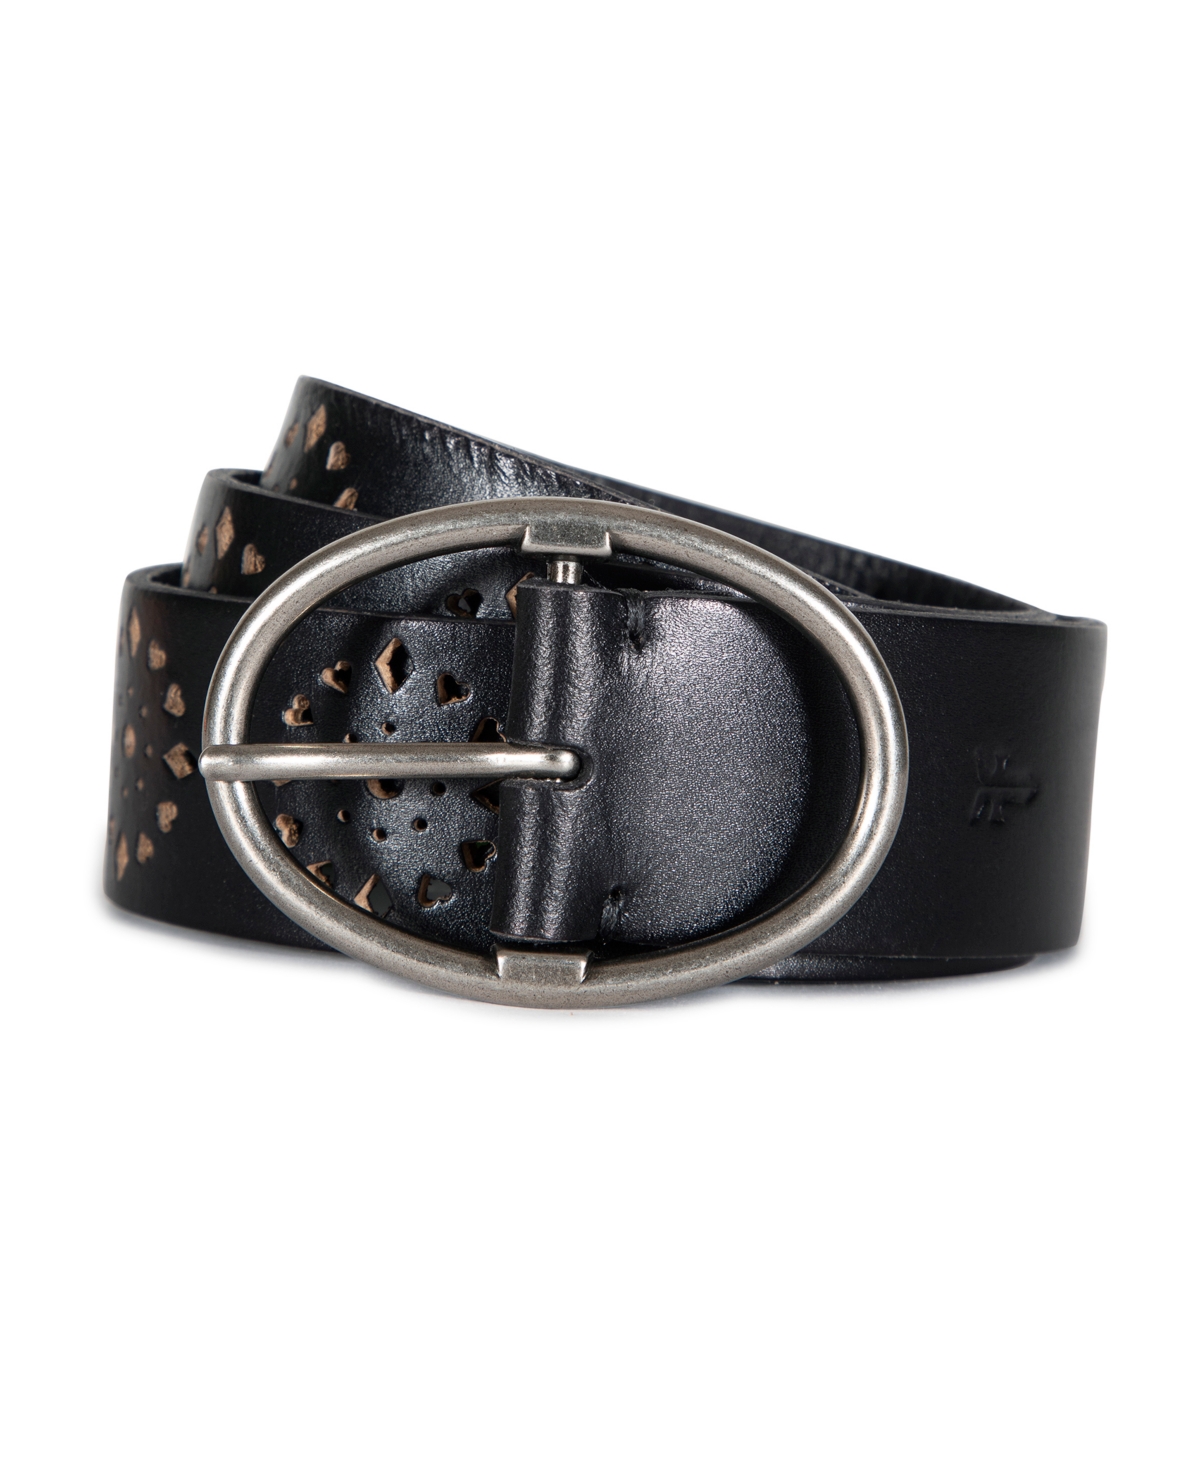 Frye Women's Leather Belt In Black